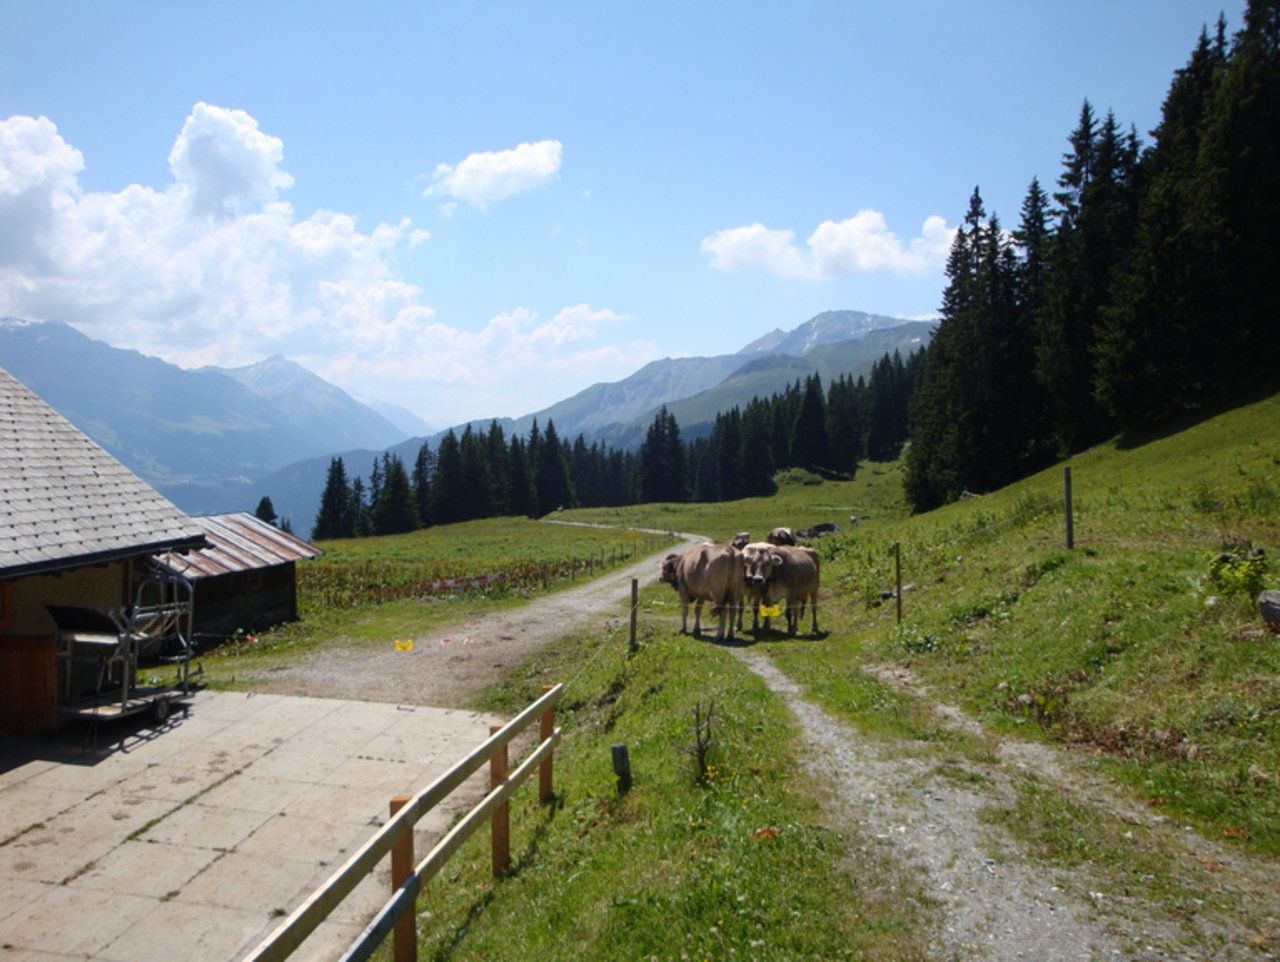 Jährlich werden rund 5'000 Tonnen Schweizer Alpkäse in sorgsamer Handarbeit produziert. (Symbolbild lid)